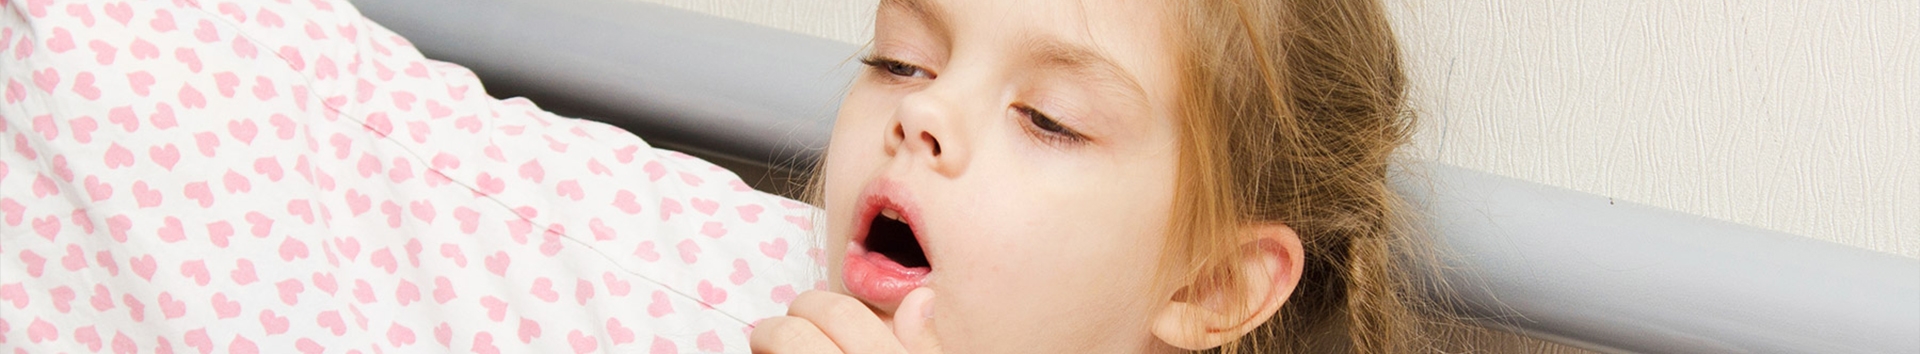 Homeopatia para gripe infantil: Última chance para confiar nessa terapia!